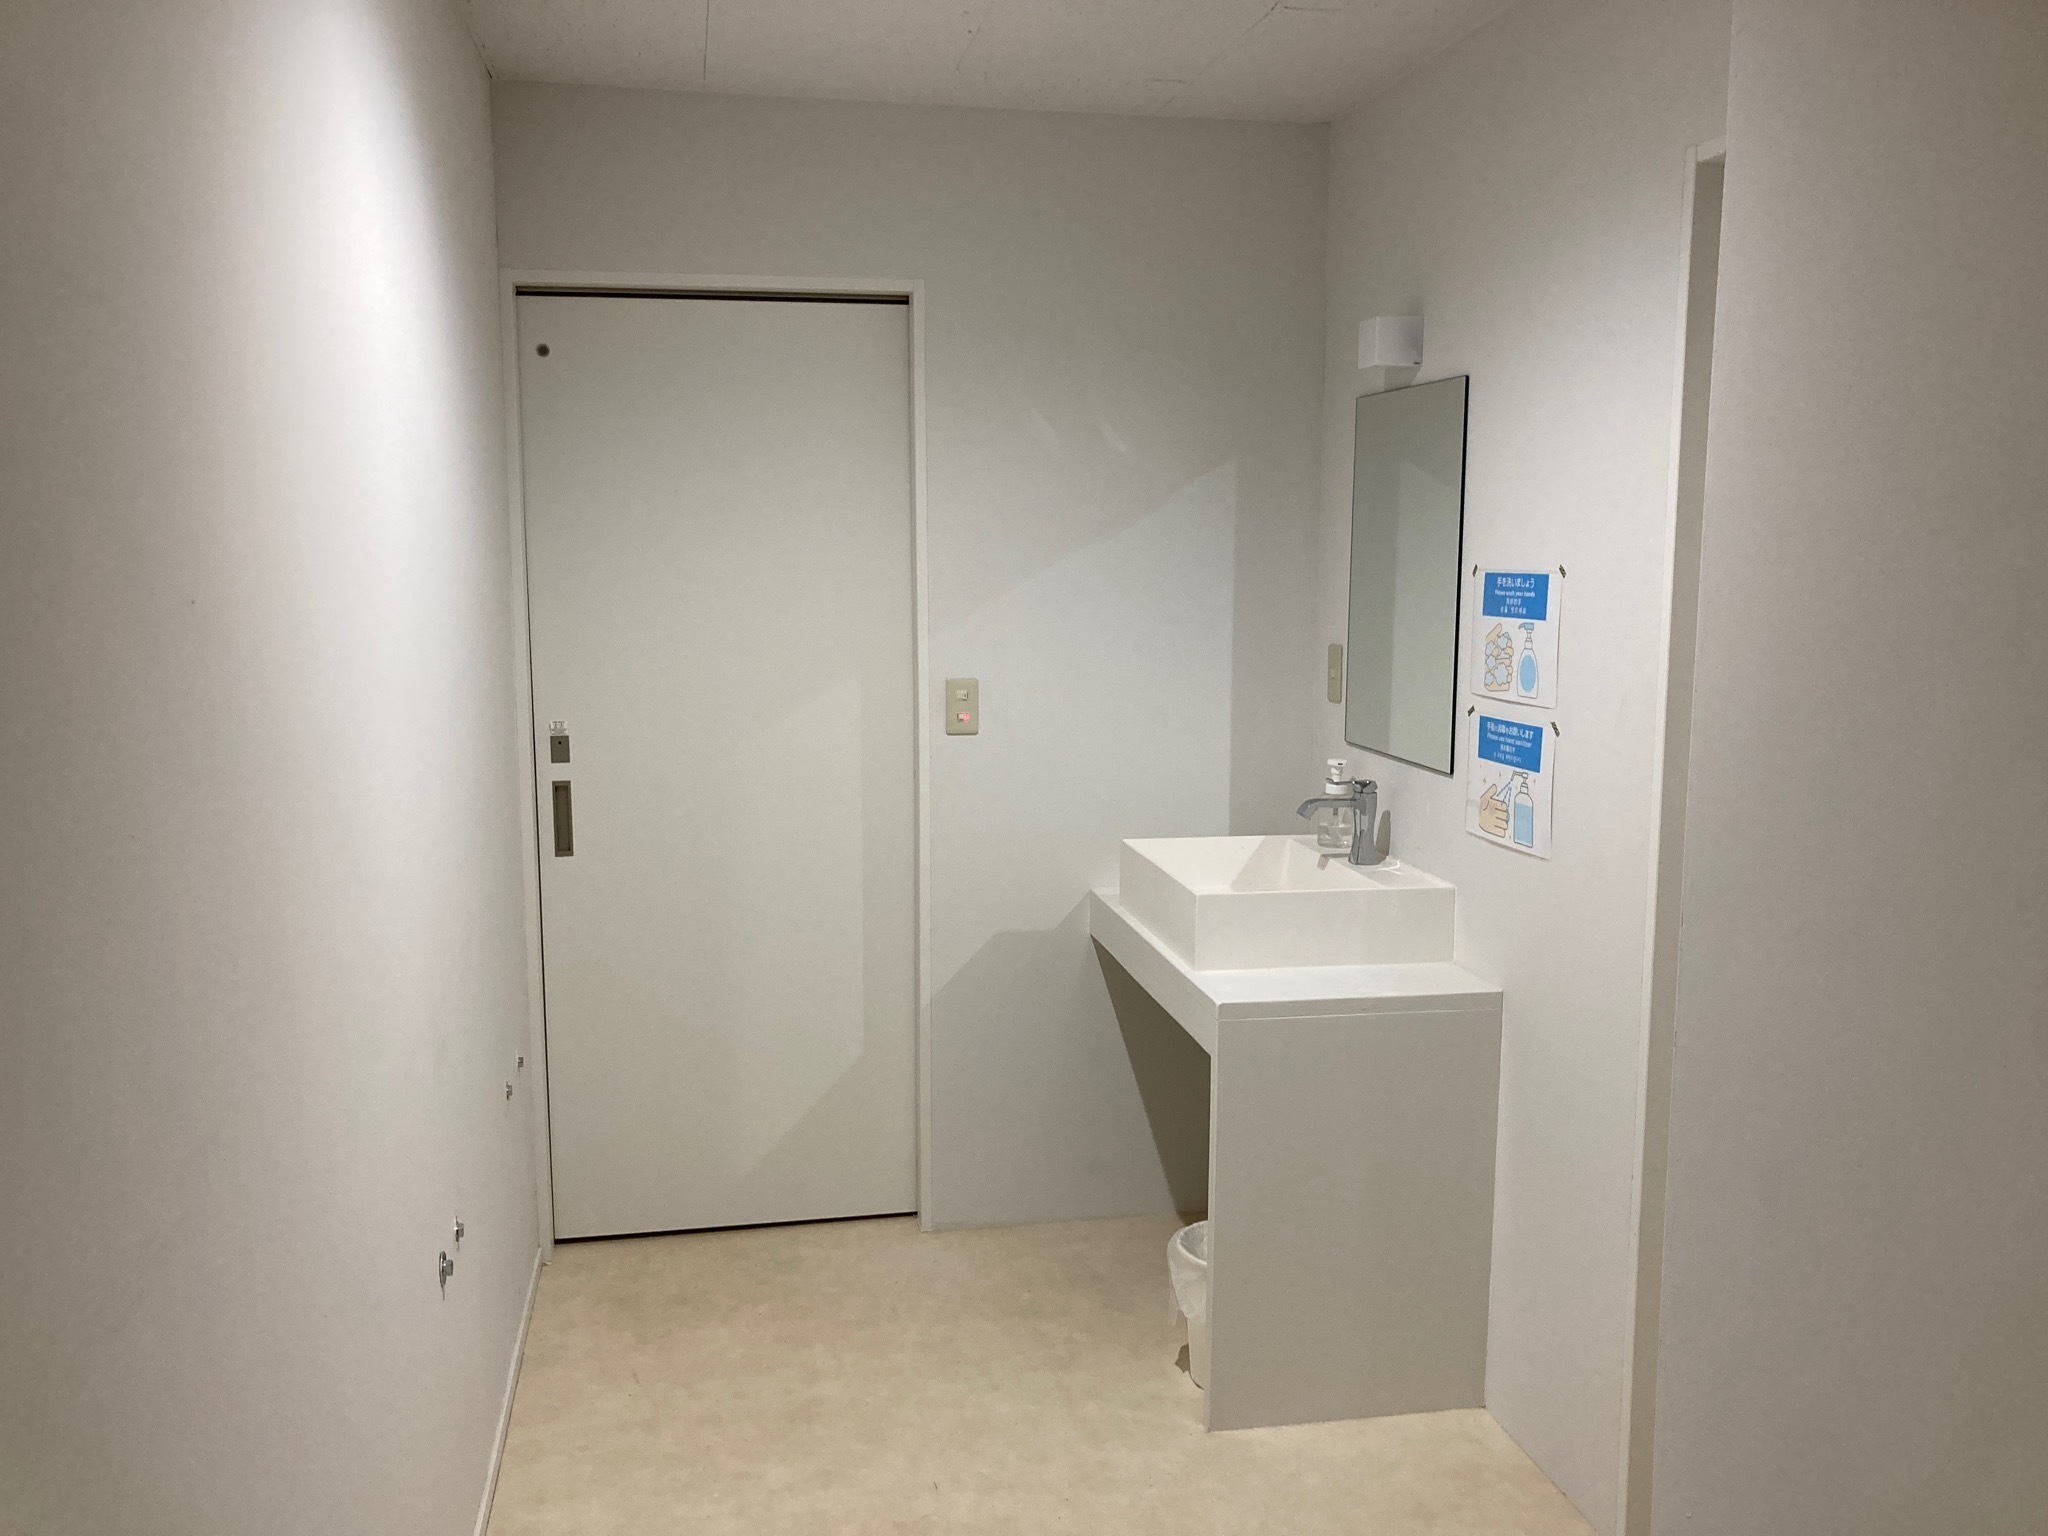 ワンちゃんOK【素泊まり】バルコニー付洋室 セミダブルベッド3台 最大6名 共用トイレ&シャワー